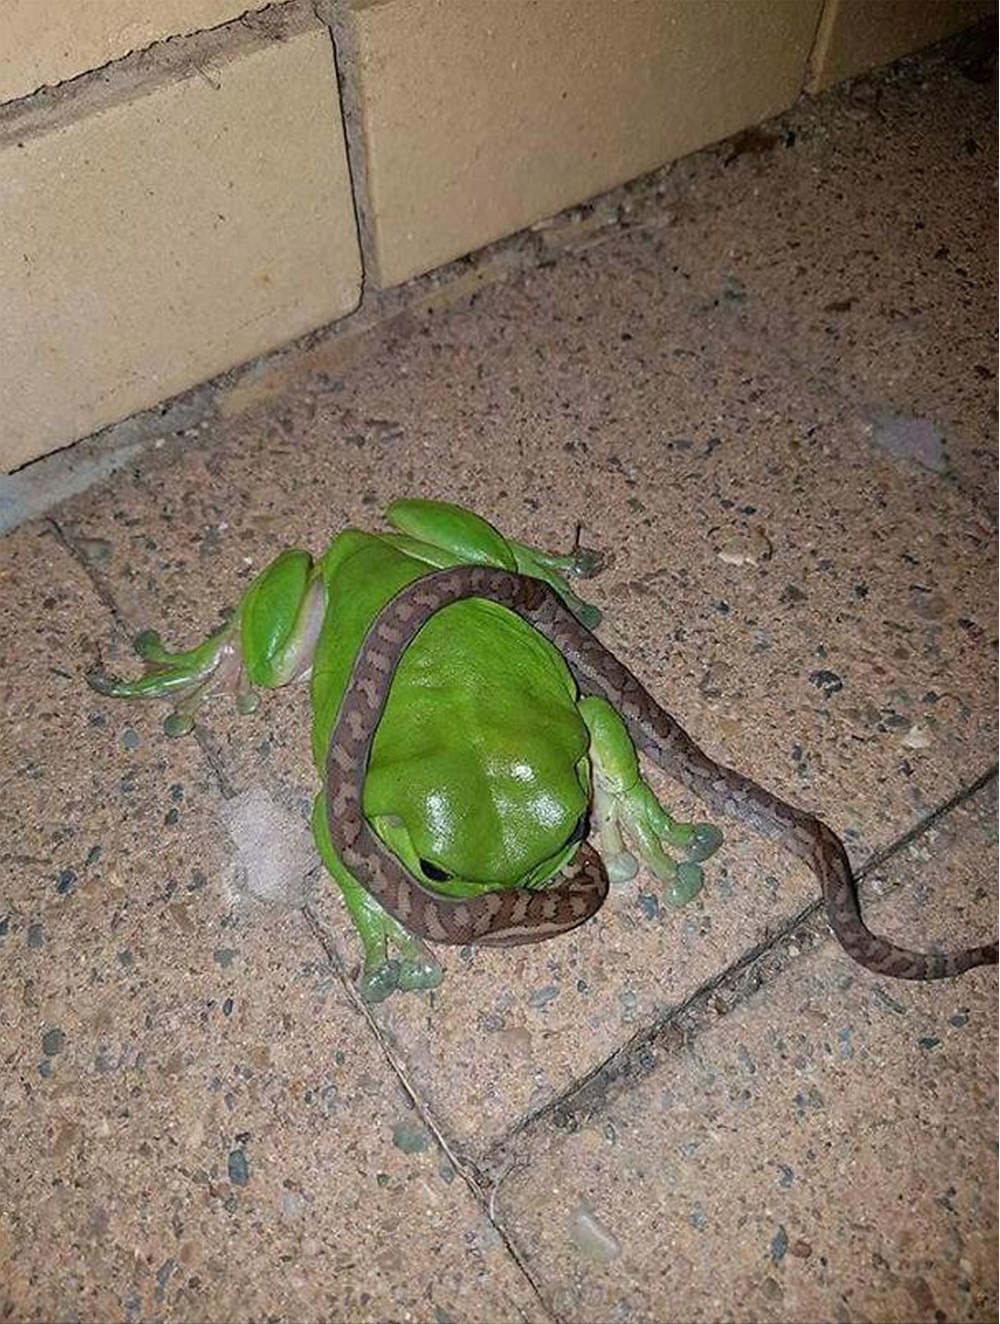 Frog eating a snake